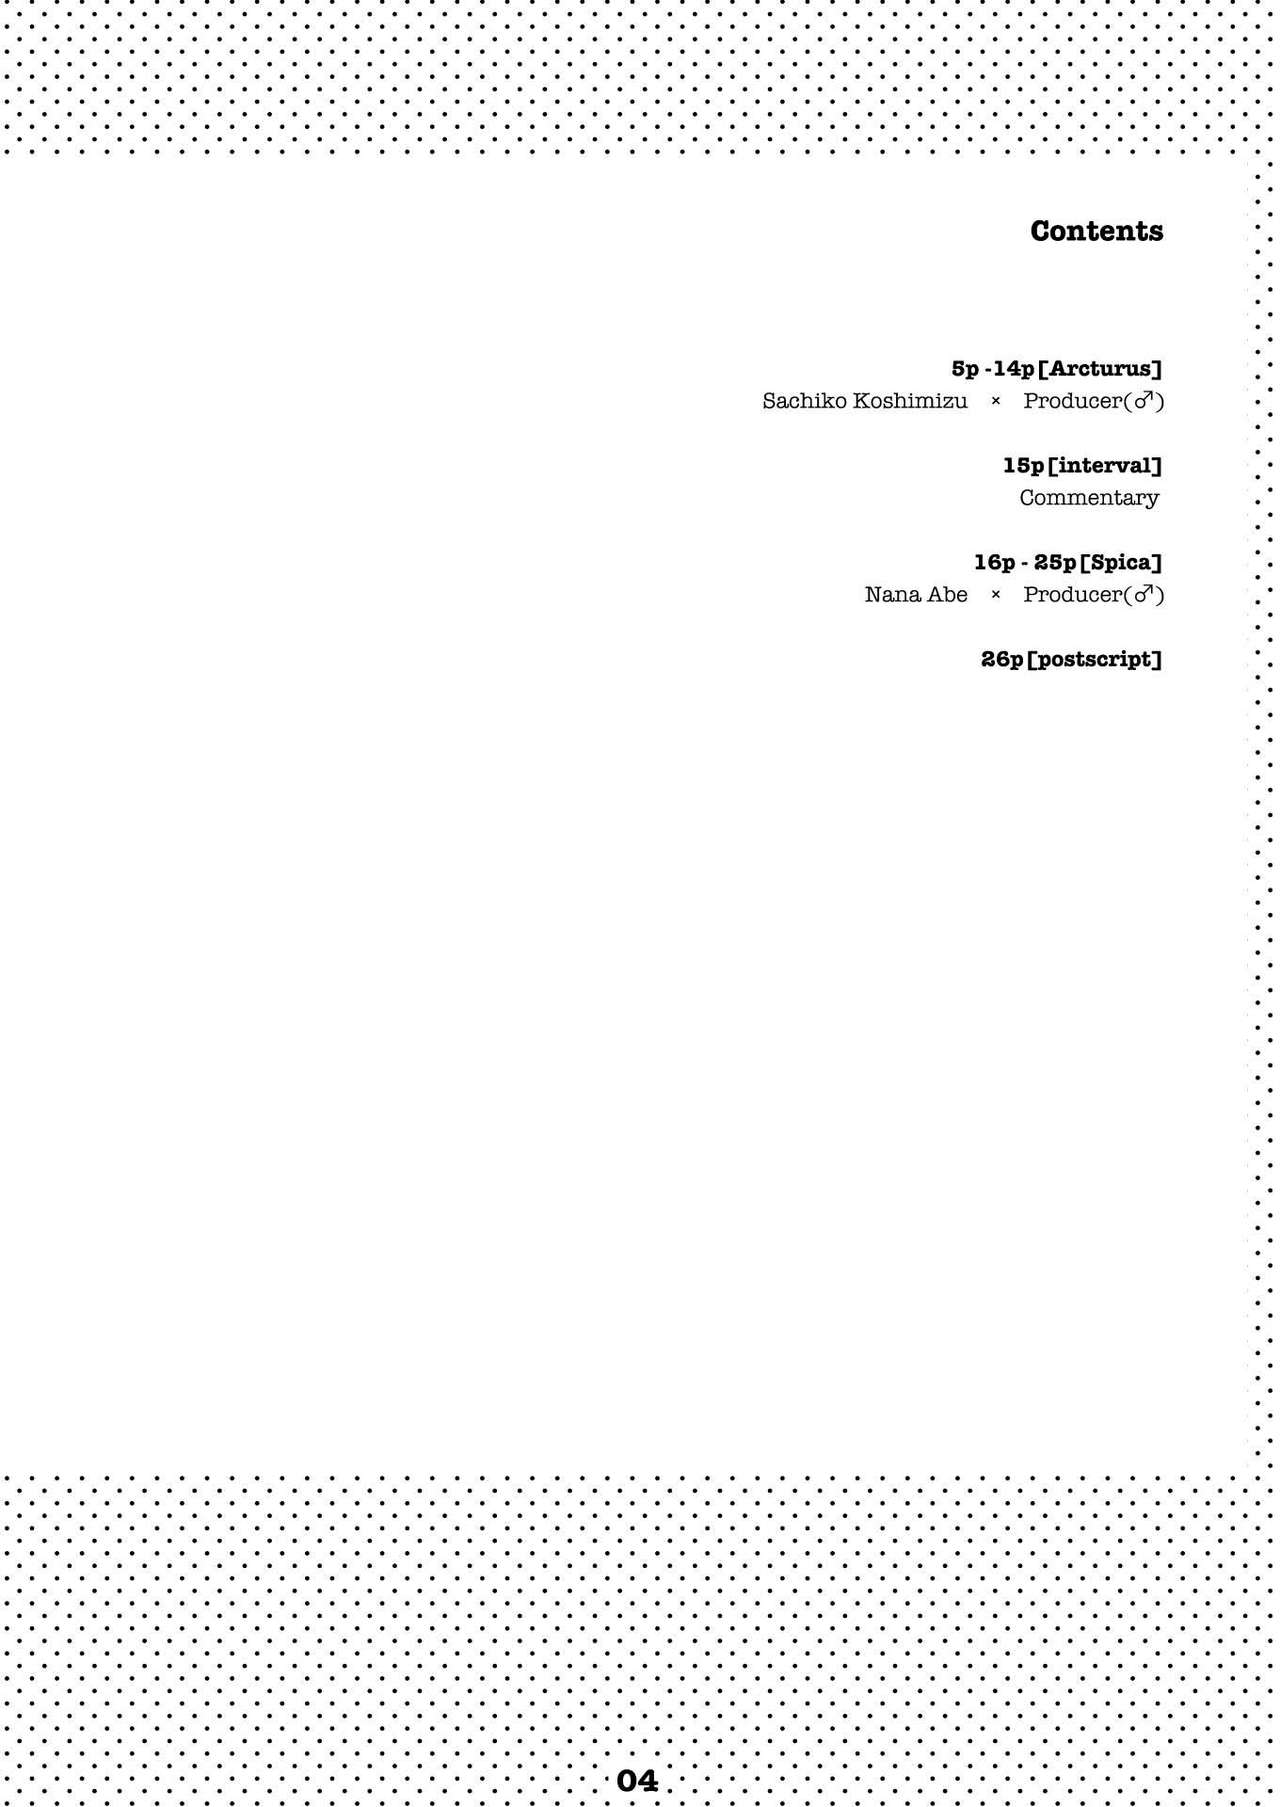 [白詰草 (了かい)] Liner Notes 01【Quadrantids】 (アイドルマスター シンデレラガールズ) [DL版]